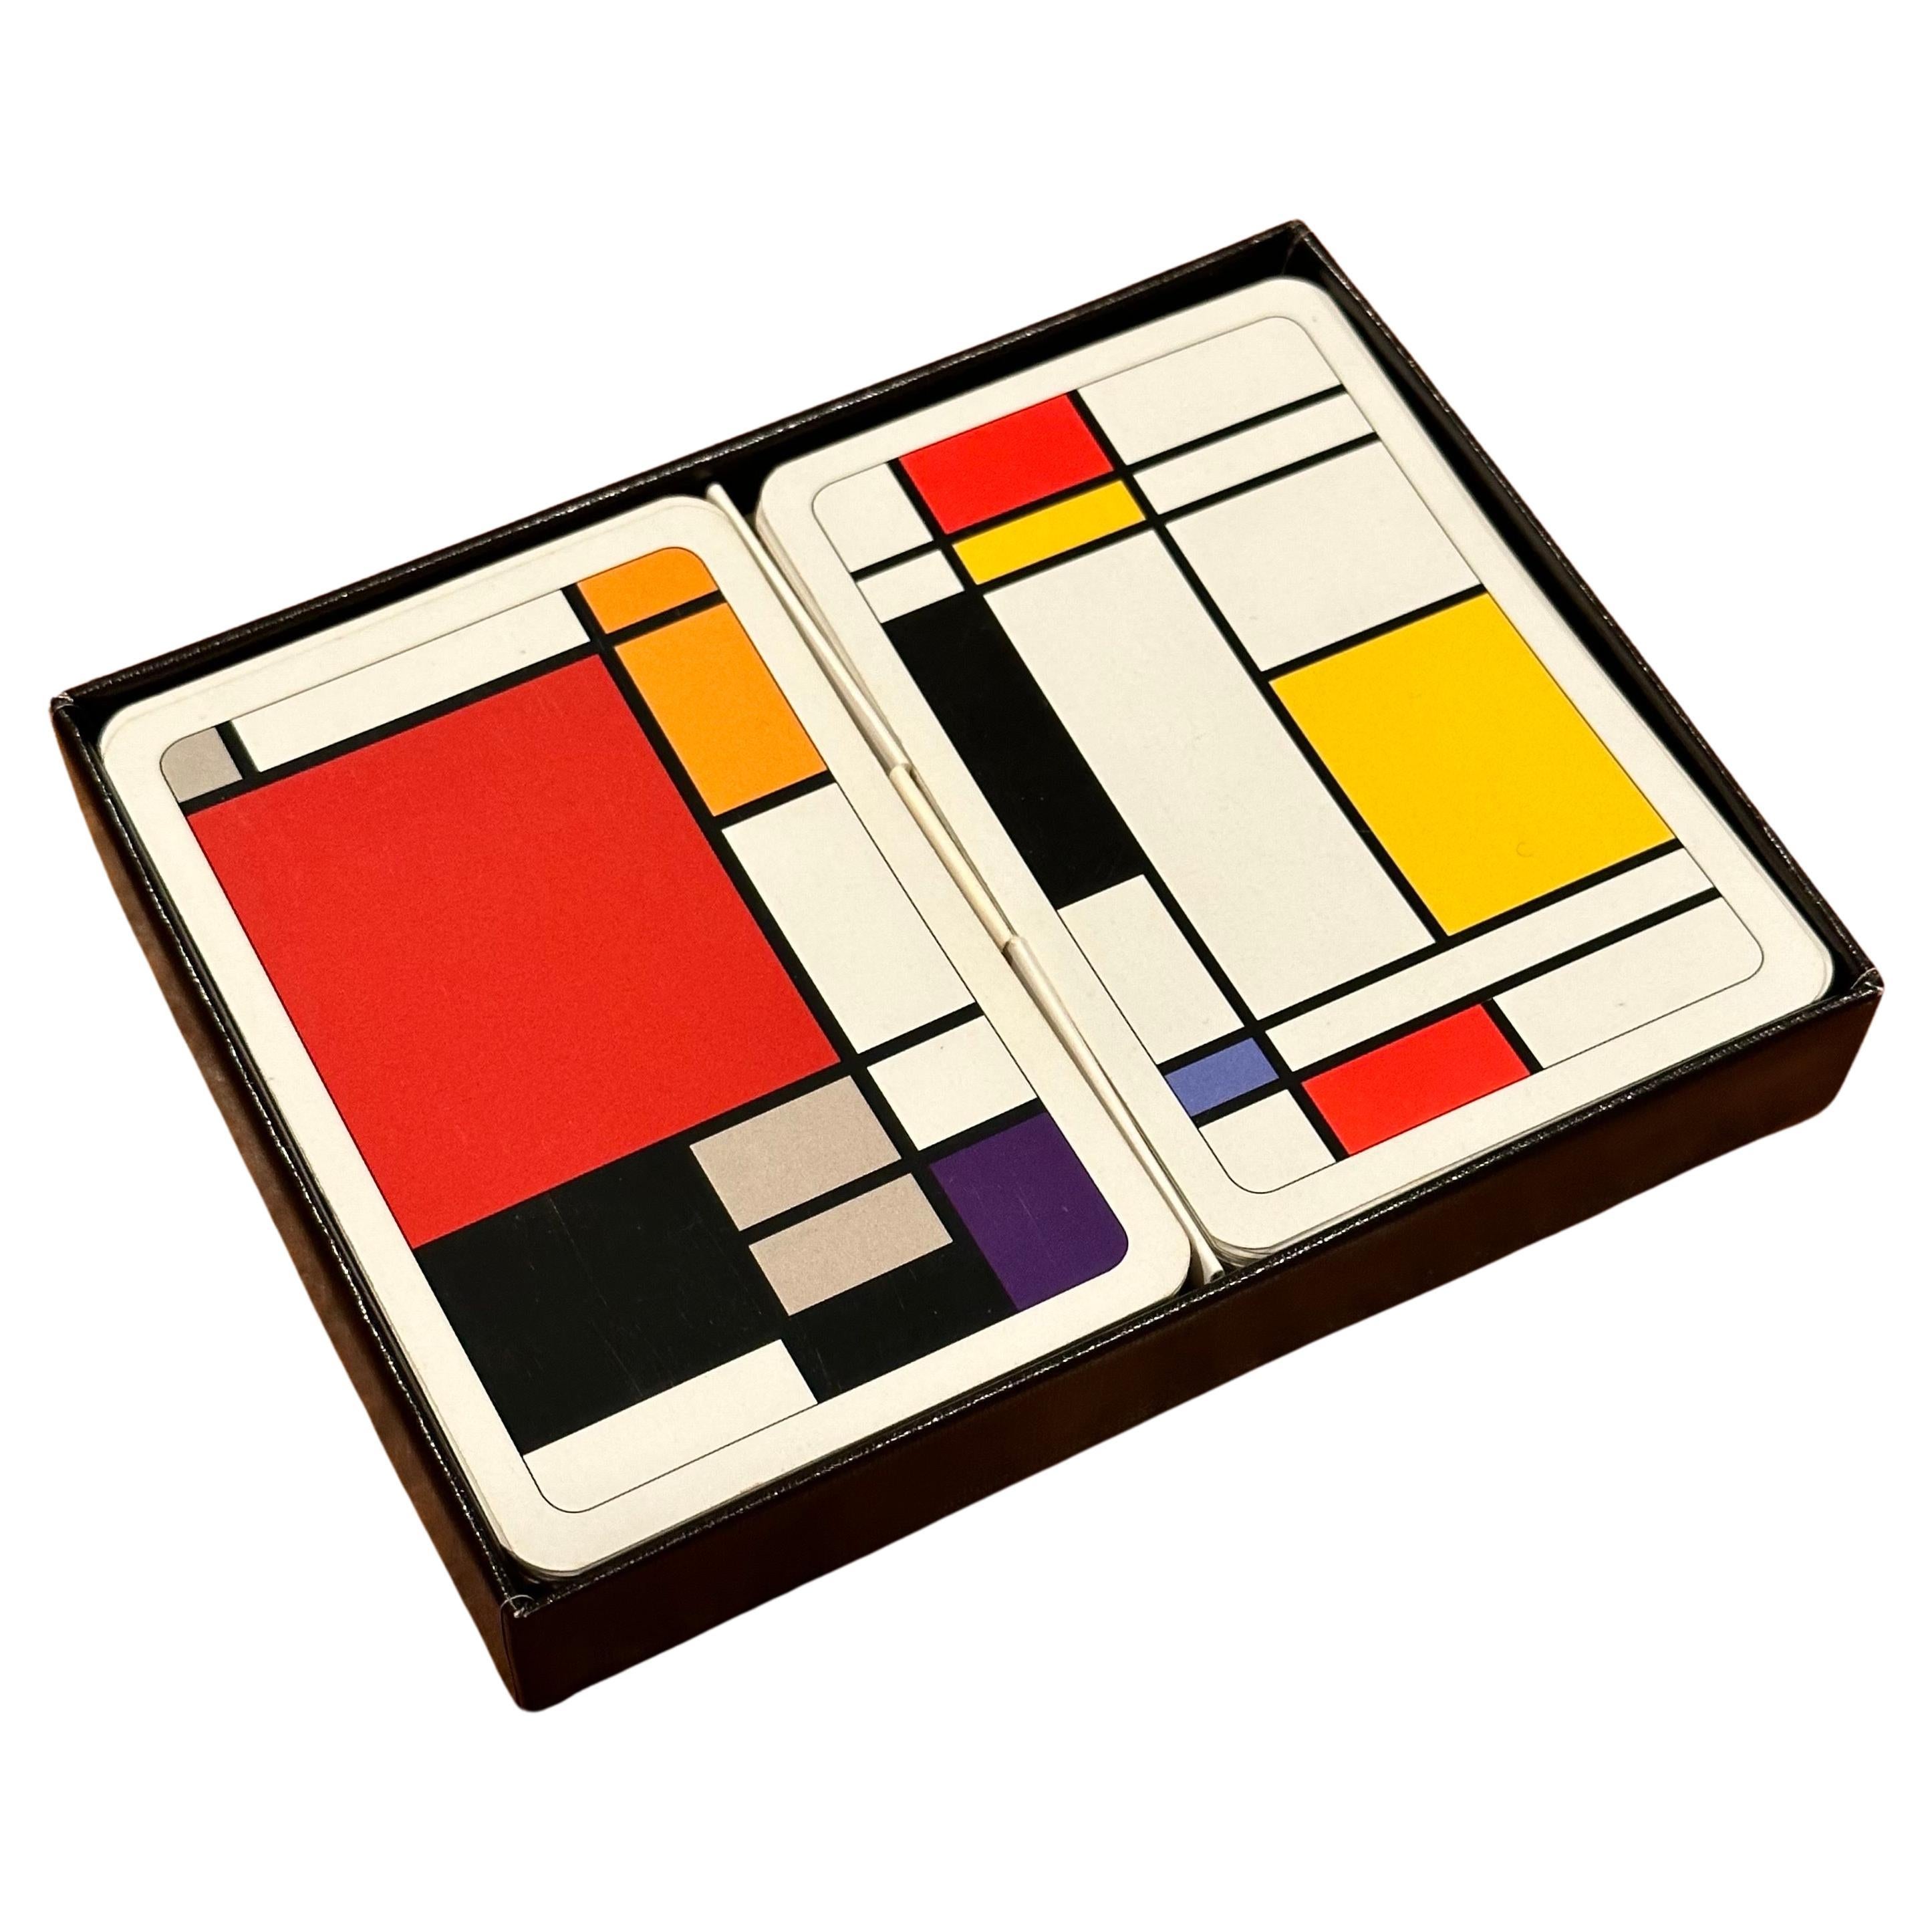 Boxiertes Spielkarten-Set im Stil von Piet Mondrian aus dem Doppeldeck